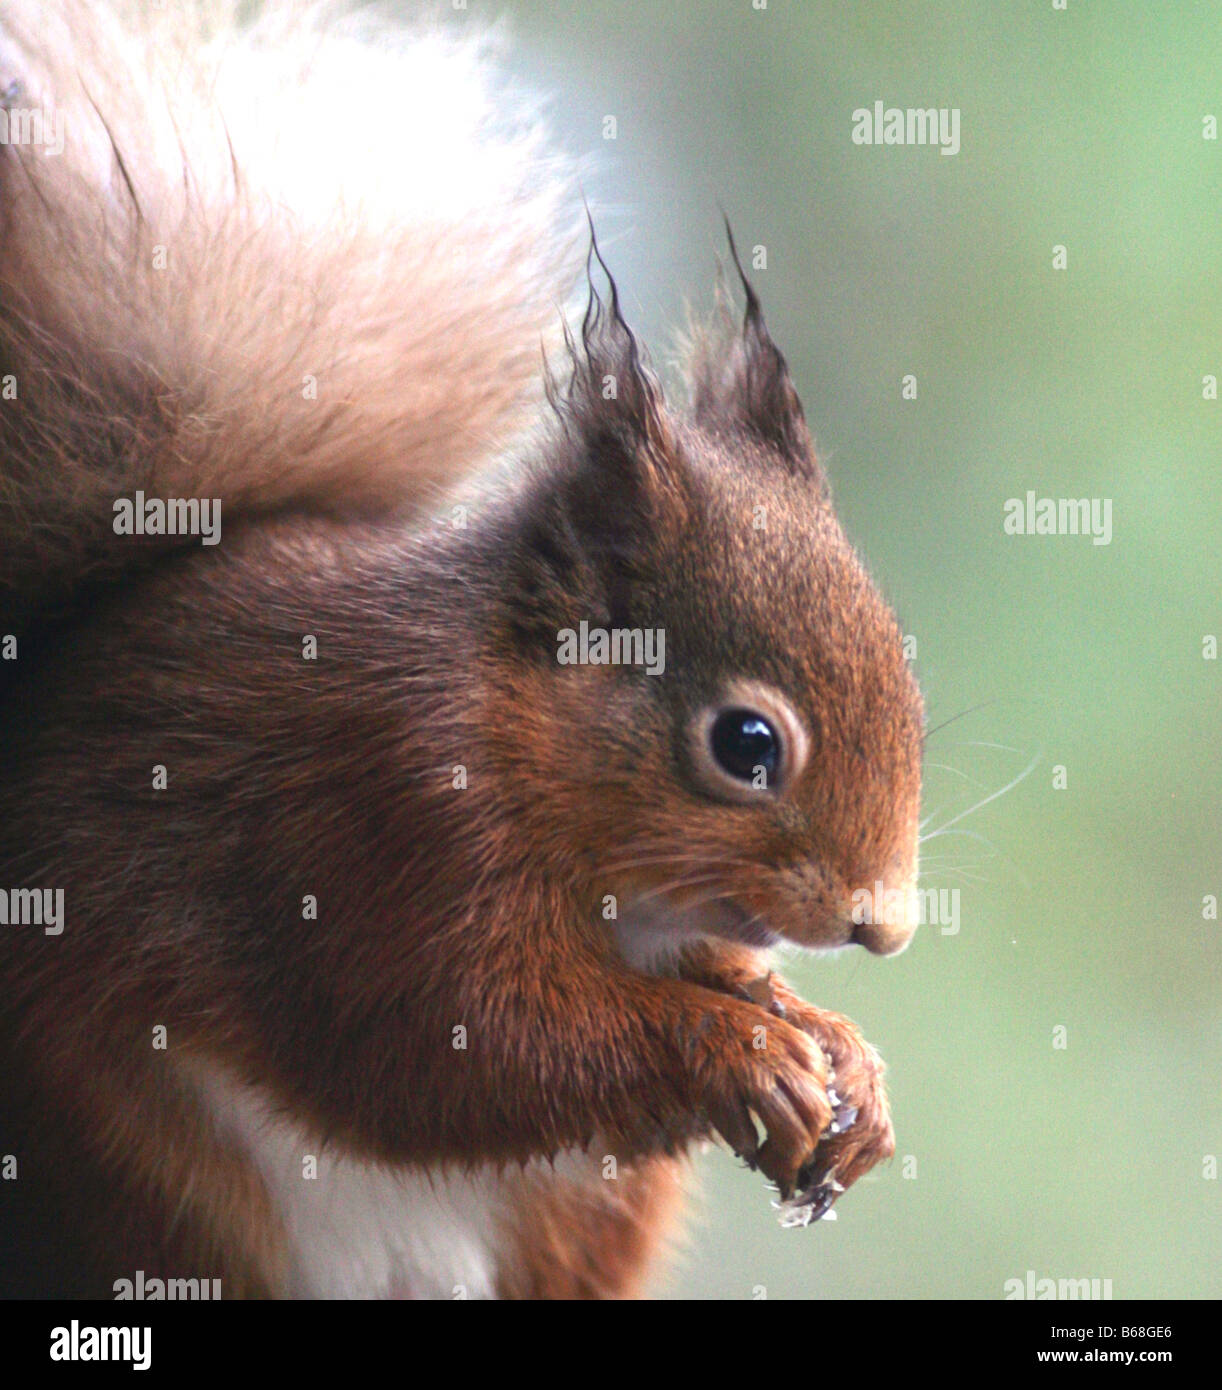 Red squirrel Sciurus vulgaris,Perthshire,Scotland,UK, Europe. Stock Photo